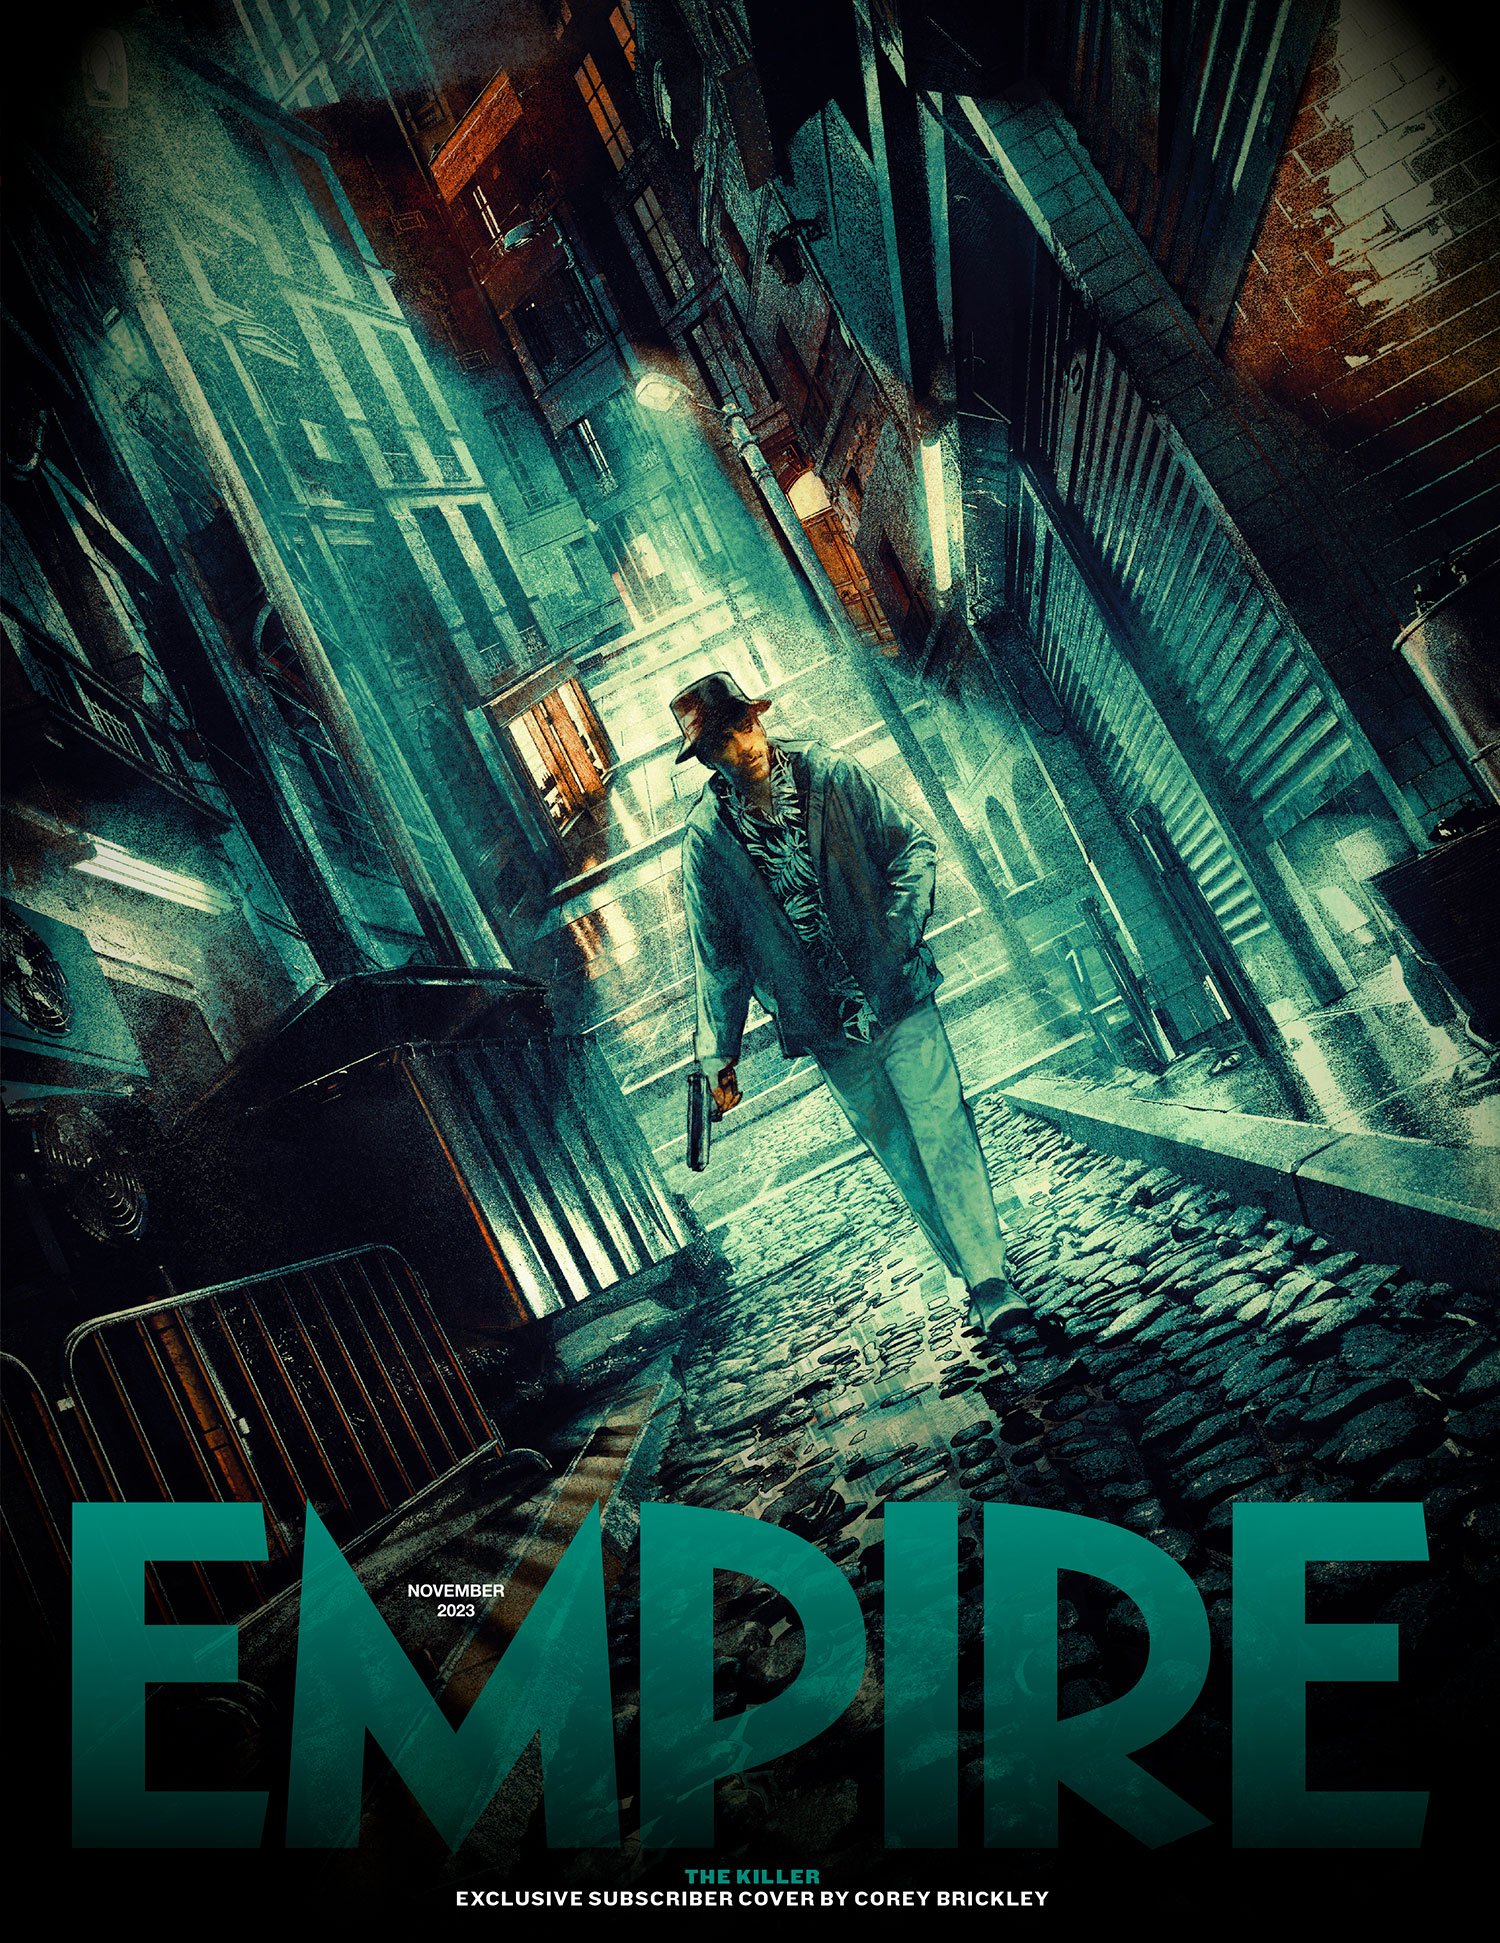 O Assassino, filme de David Fincher, é destaque em capa bonitona